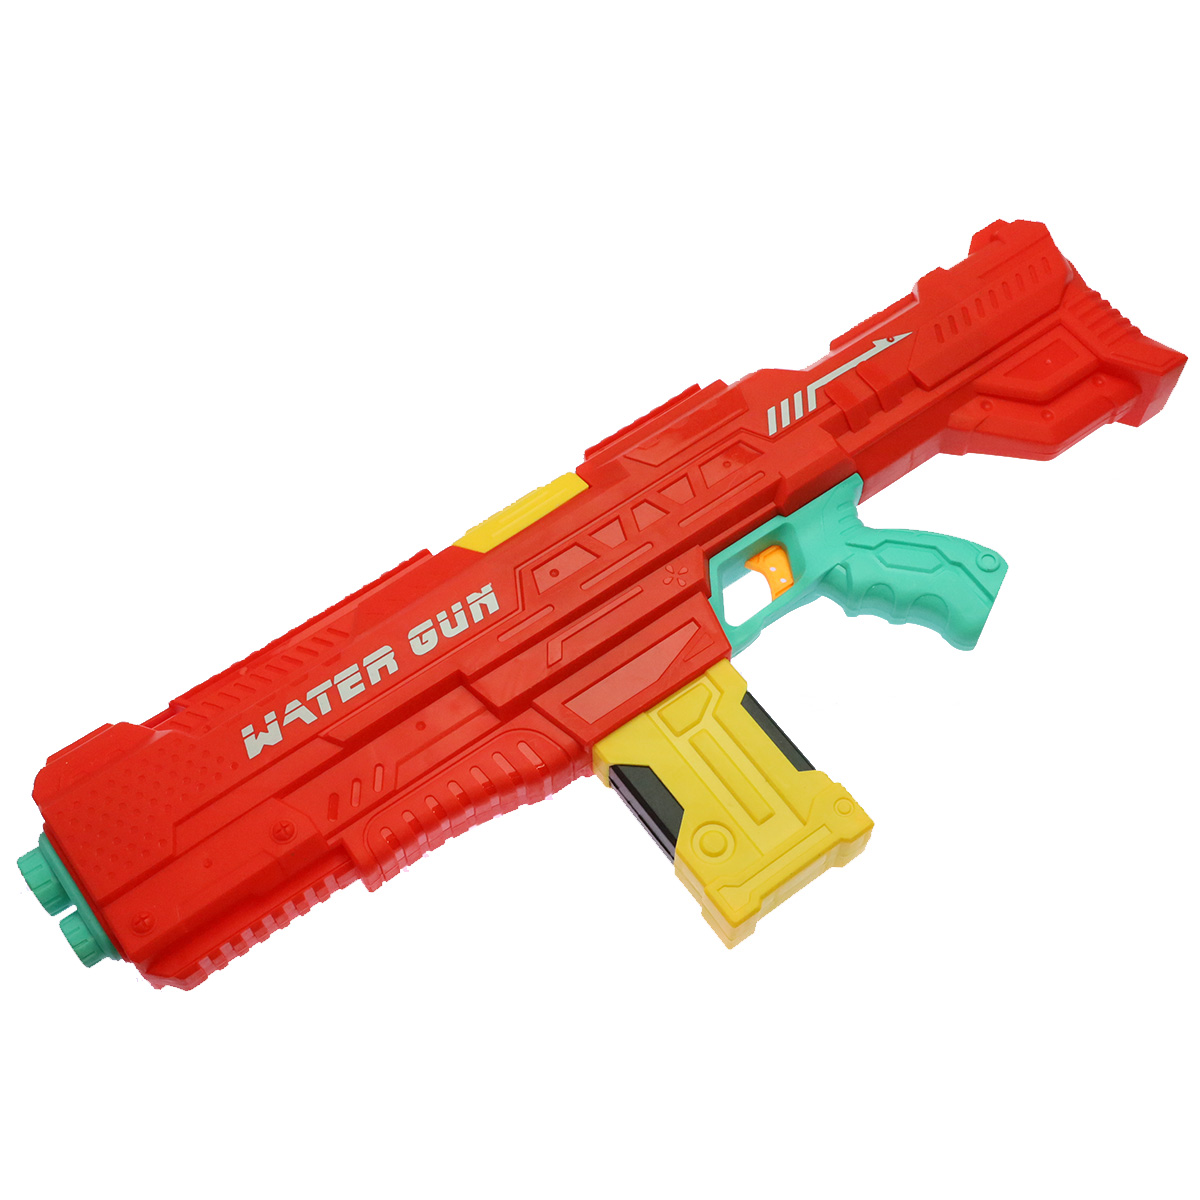 Электрический водяной автомат - игрушка Water Gun, цвет красный